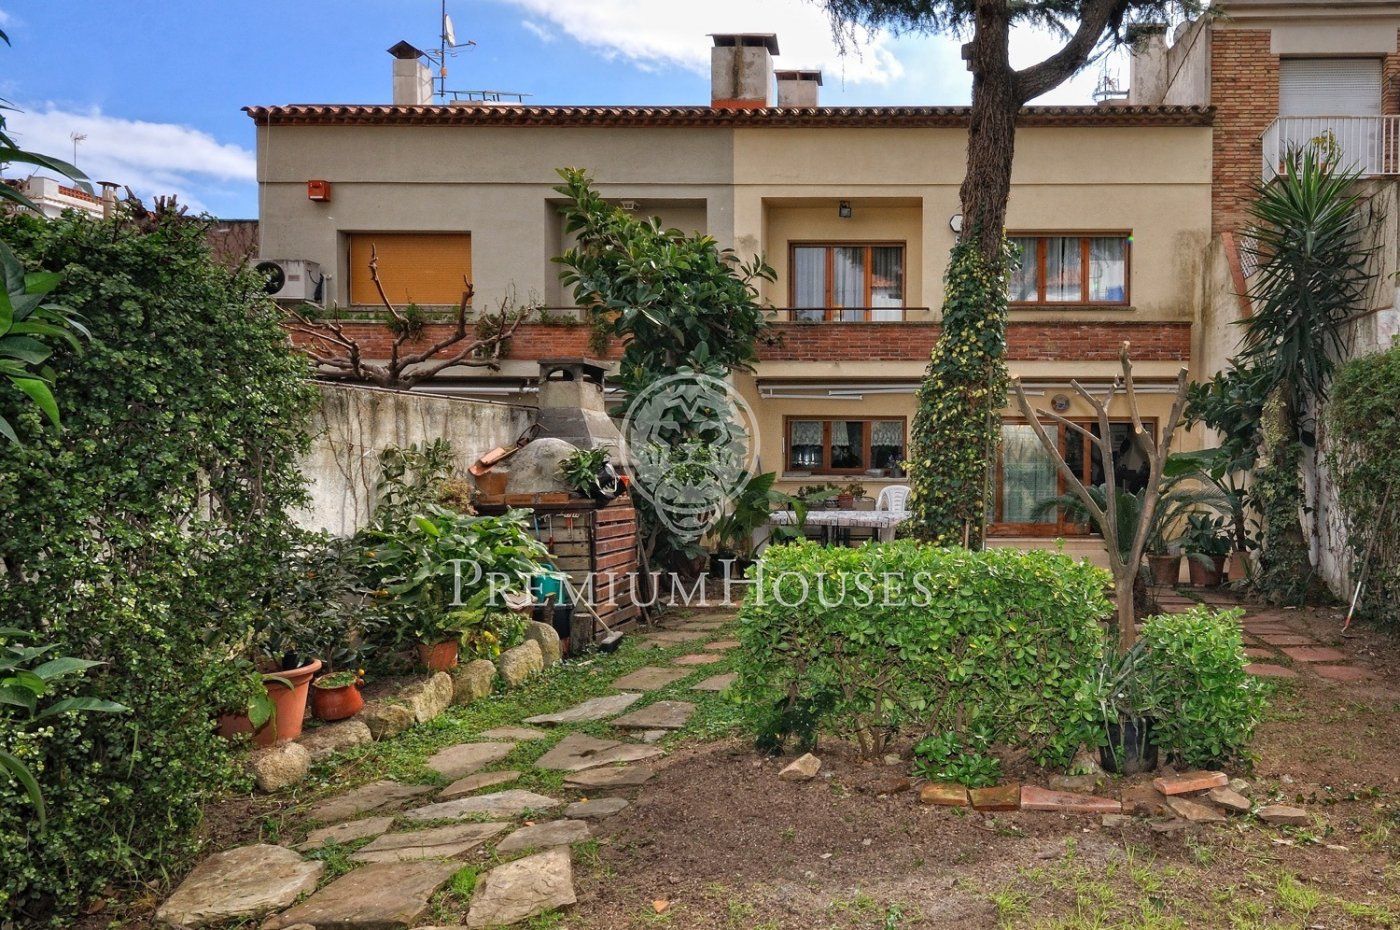 Casa de 314 m² en venta en Vilassar de Mar | Premium Houses